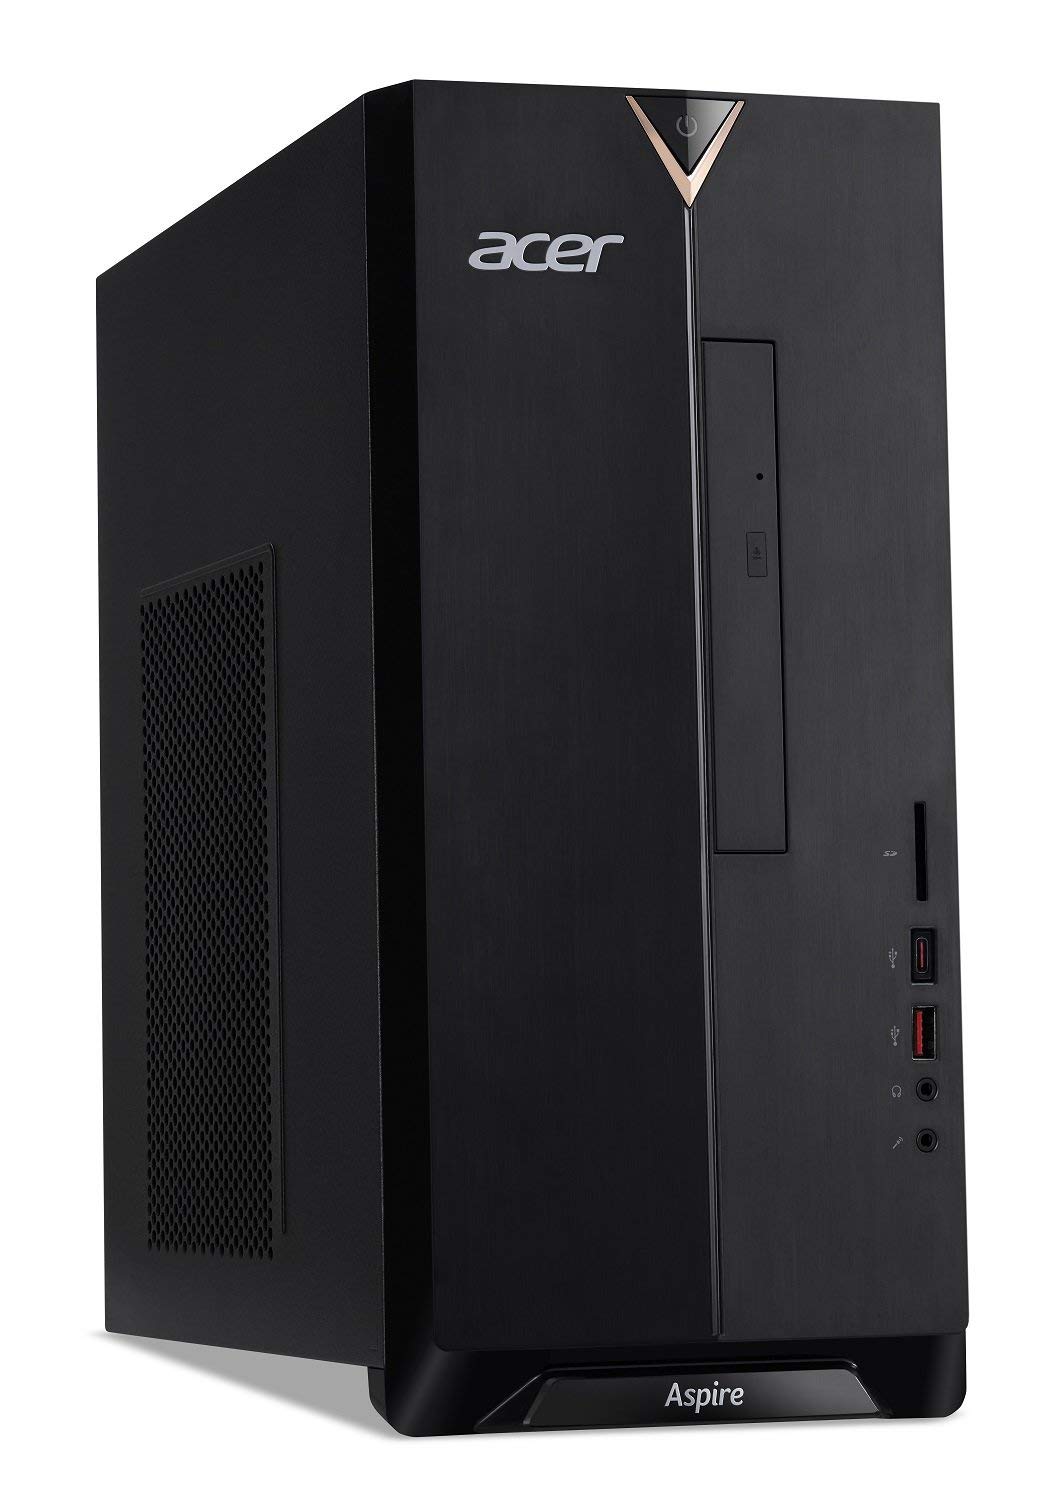 Acer Aspire i5-8400, 12GB DDR4, 2TB HDD, 8X DVD, 802.11ac WiFi,